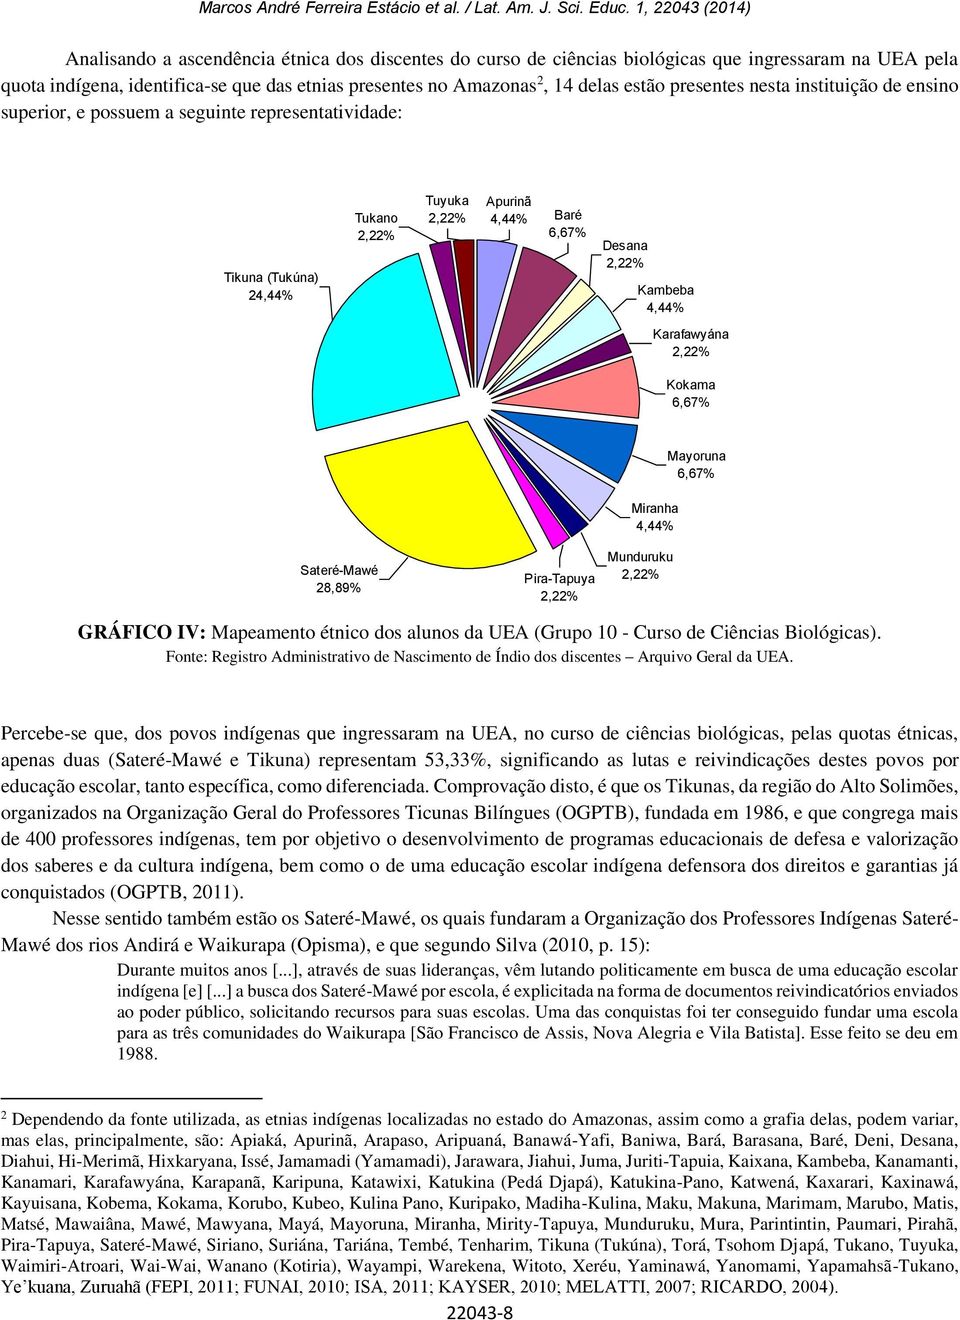 Karafawyána 2,22% Kokama 6,67% Mayoruna 6,67% Miranha 4,44% Sateré-Mawé 28,89% Pira-Tapuya 2,22% Munduruku 2,22% GRÁFICO IV: Mapeamento étnico dos alunos da UEA (Grupo 1 - Curso de Ciências